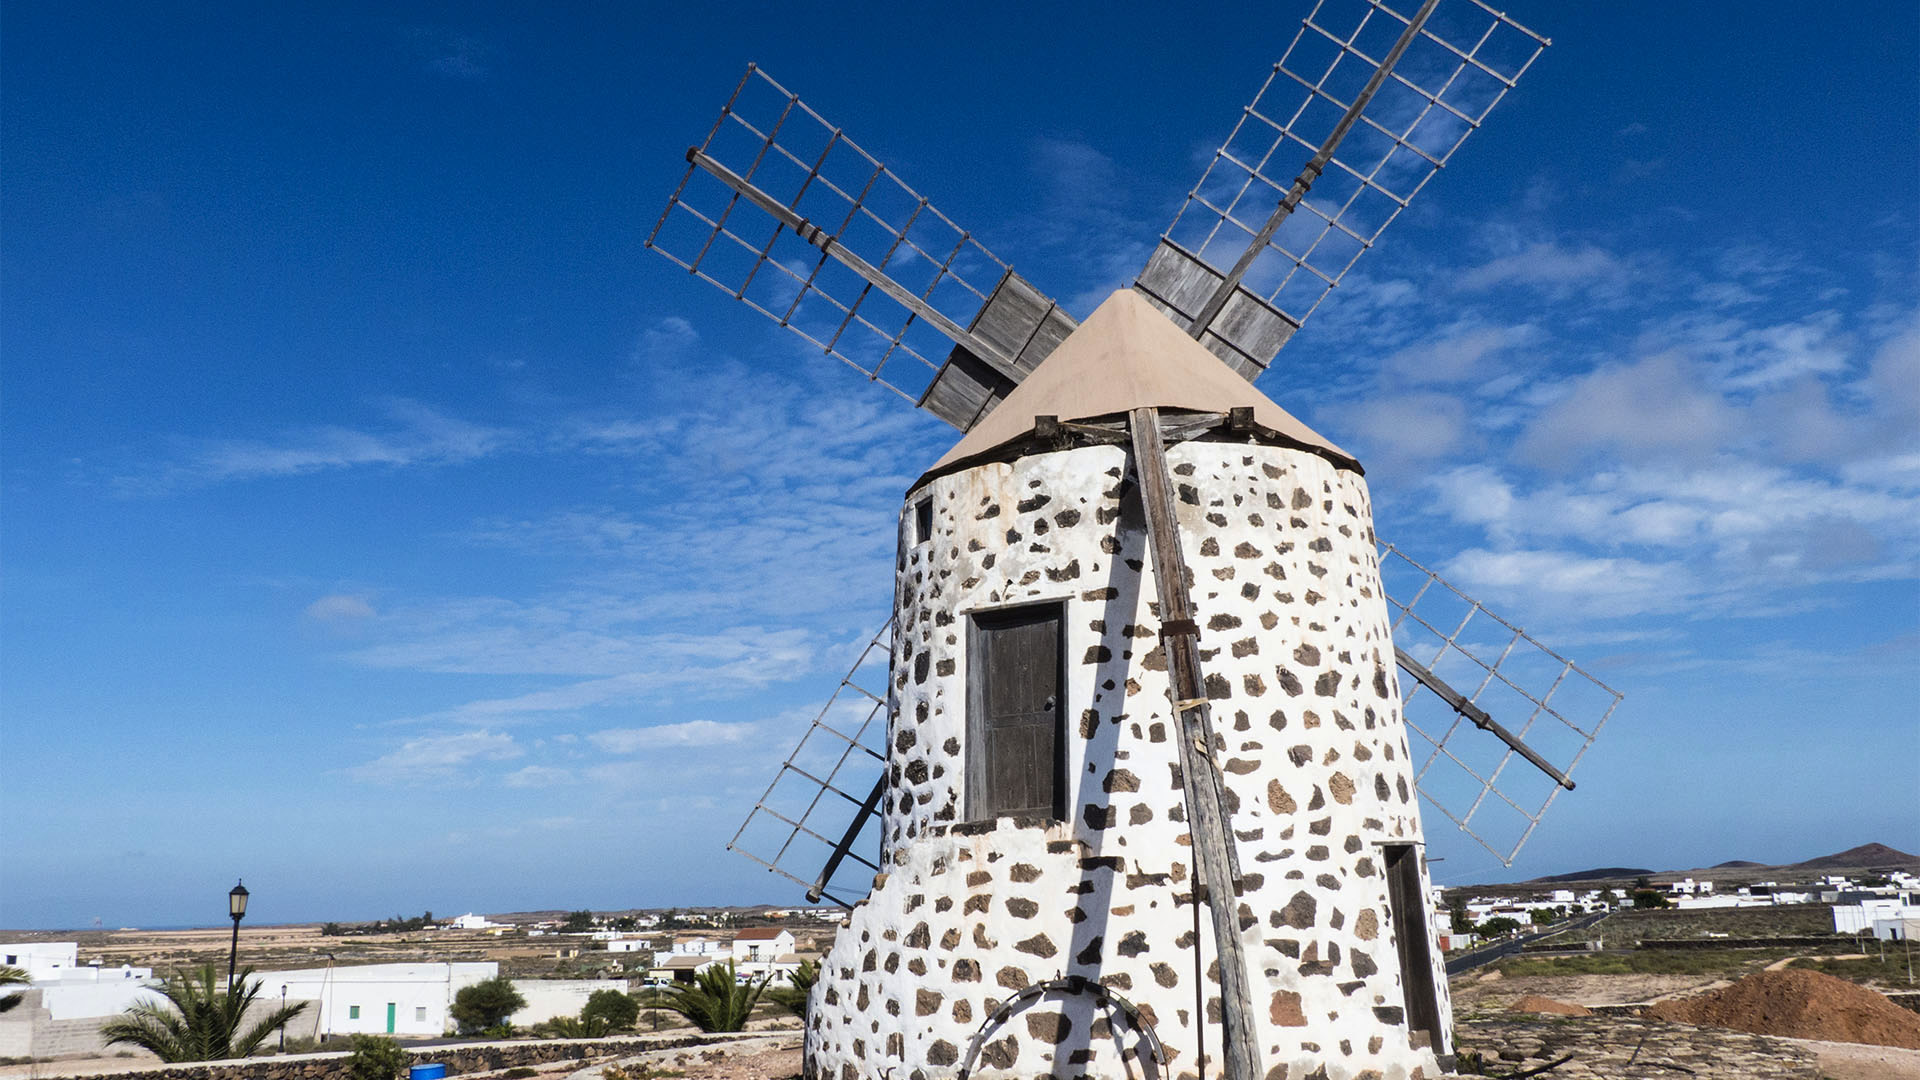 Sehenswürdigkeiten Fuerteventuras: Lajares – Windmühlen